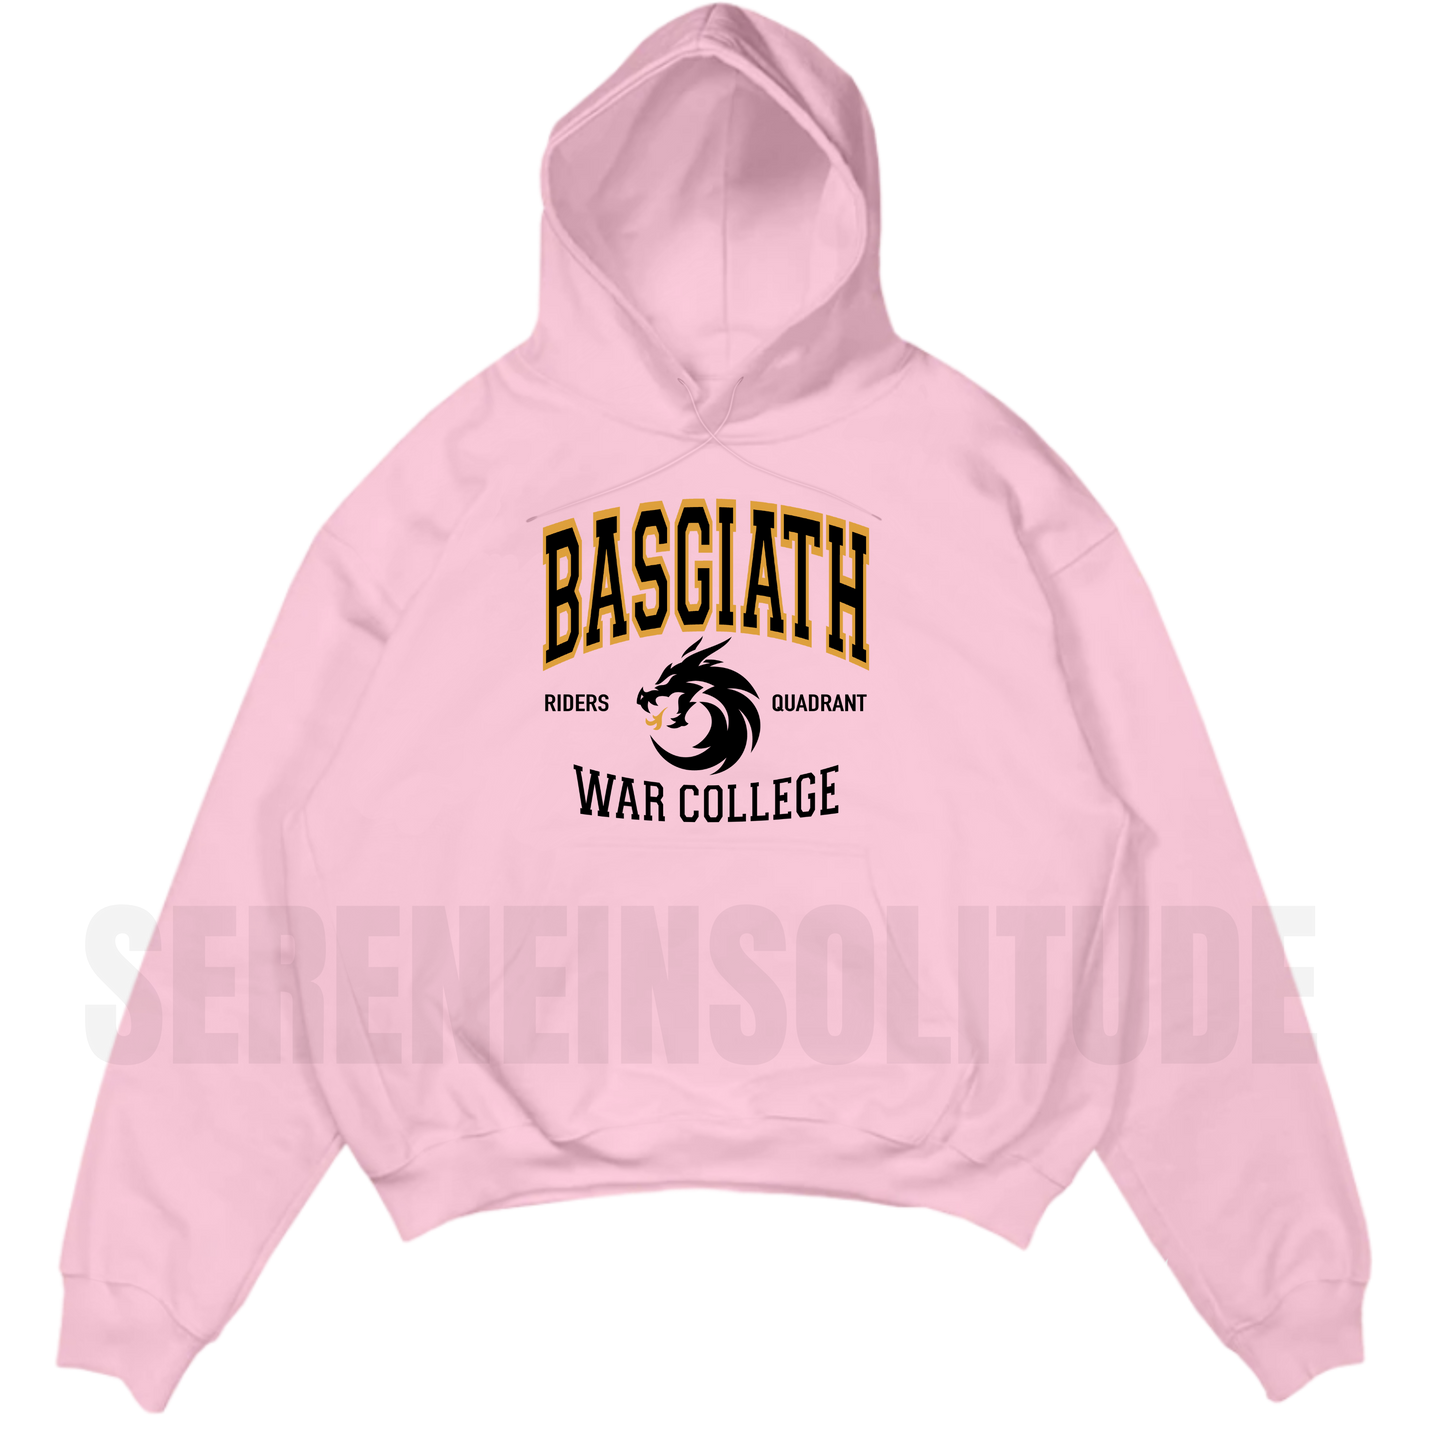 Basgiath Sweatshirt